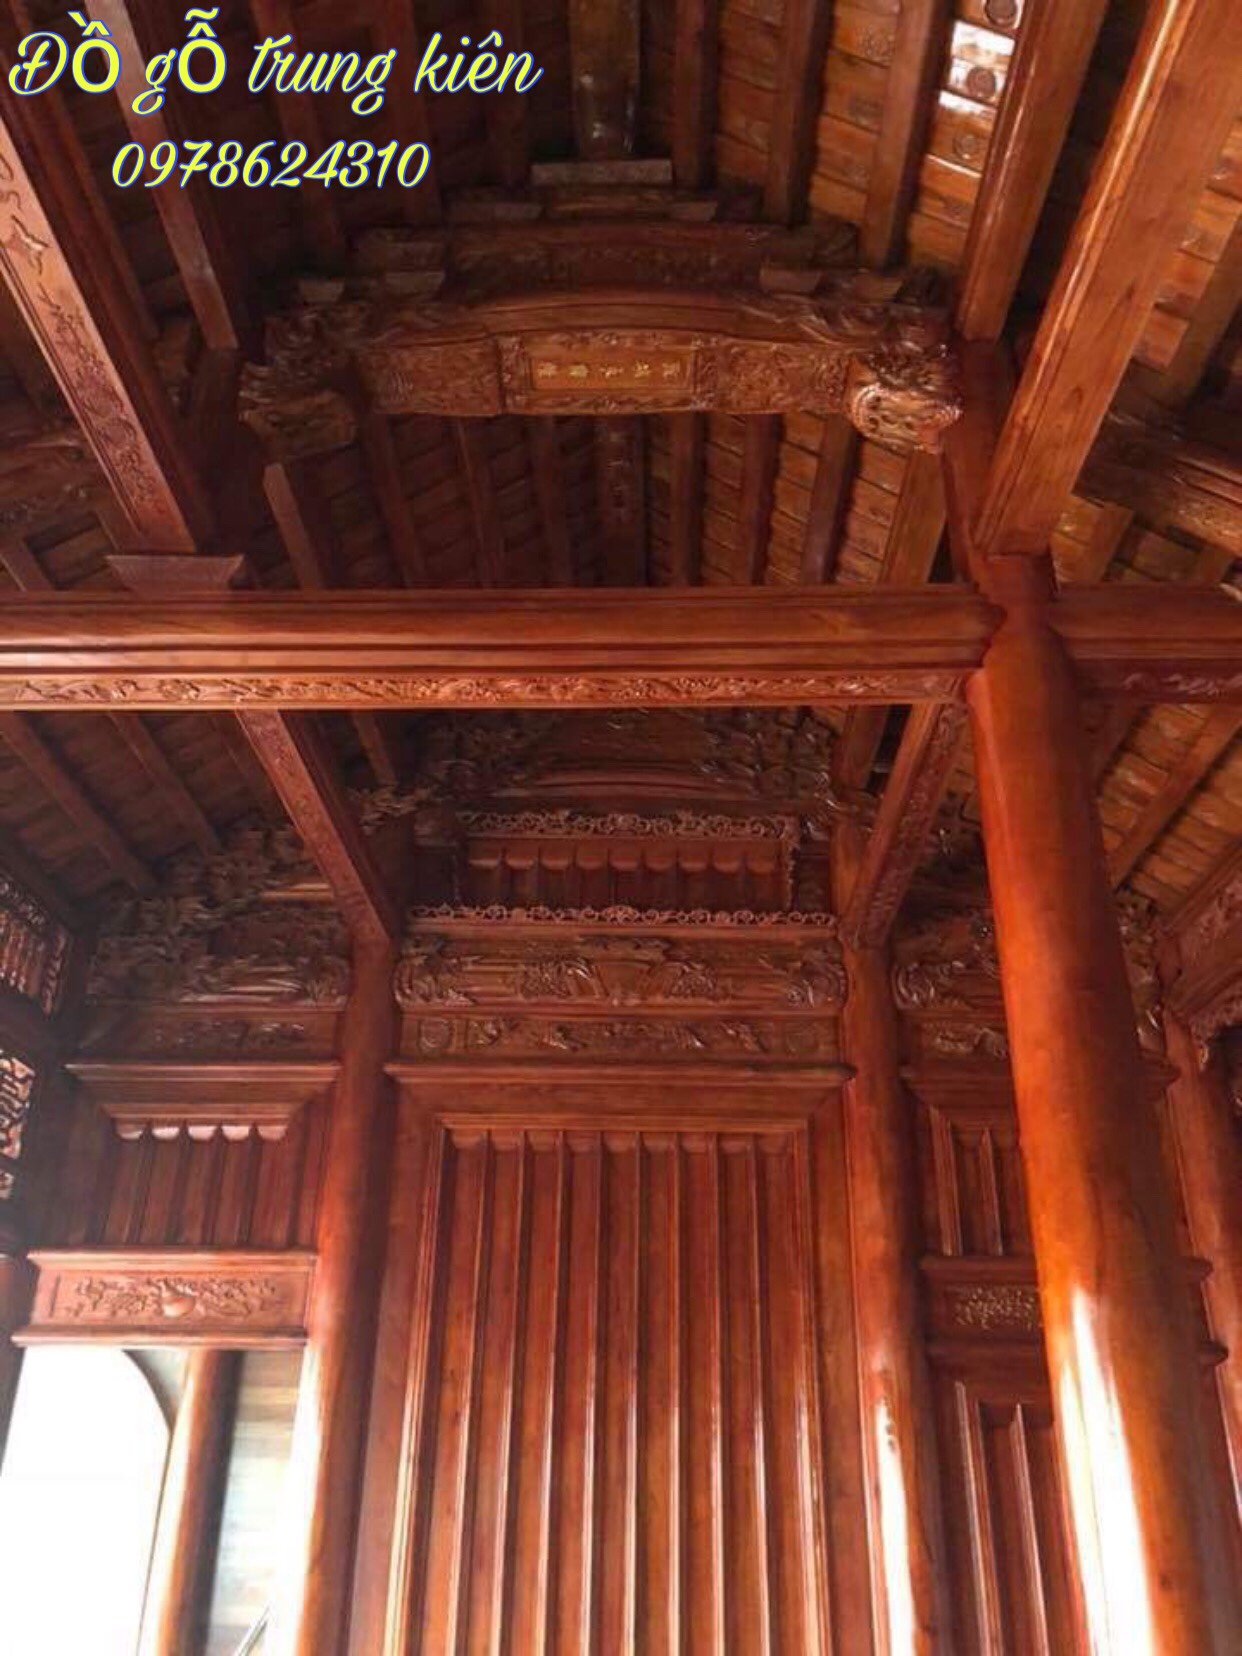 Nhà gỗ truyền thống - Nhà Gỗ Trung Kiên - Công Ty Sản Xuất Và Thương Mại Đồ Gỗ Trung Kiên